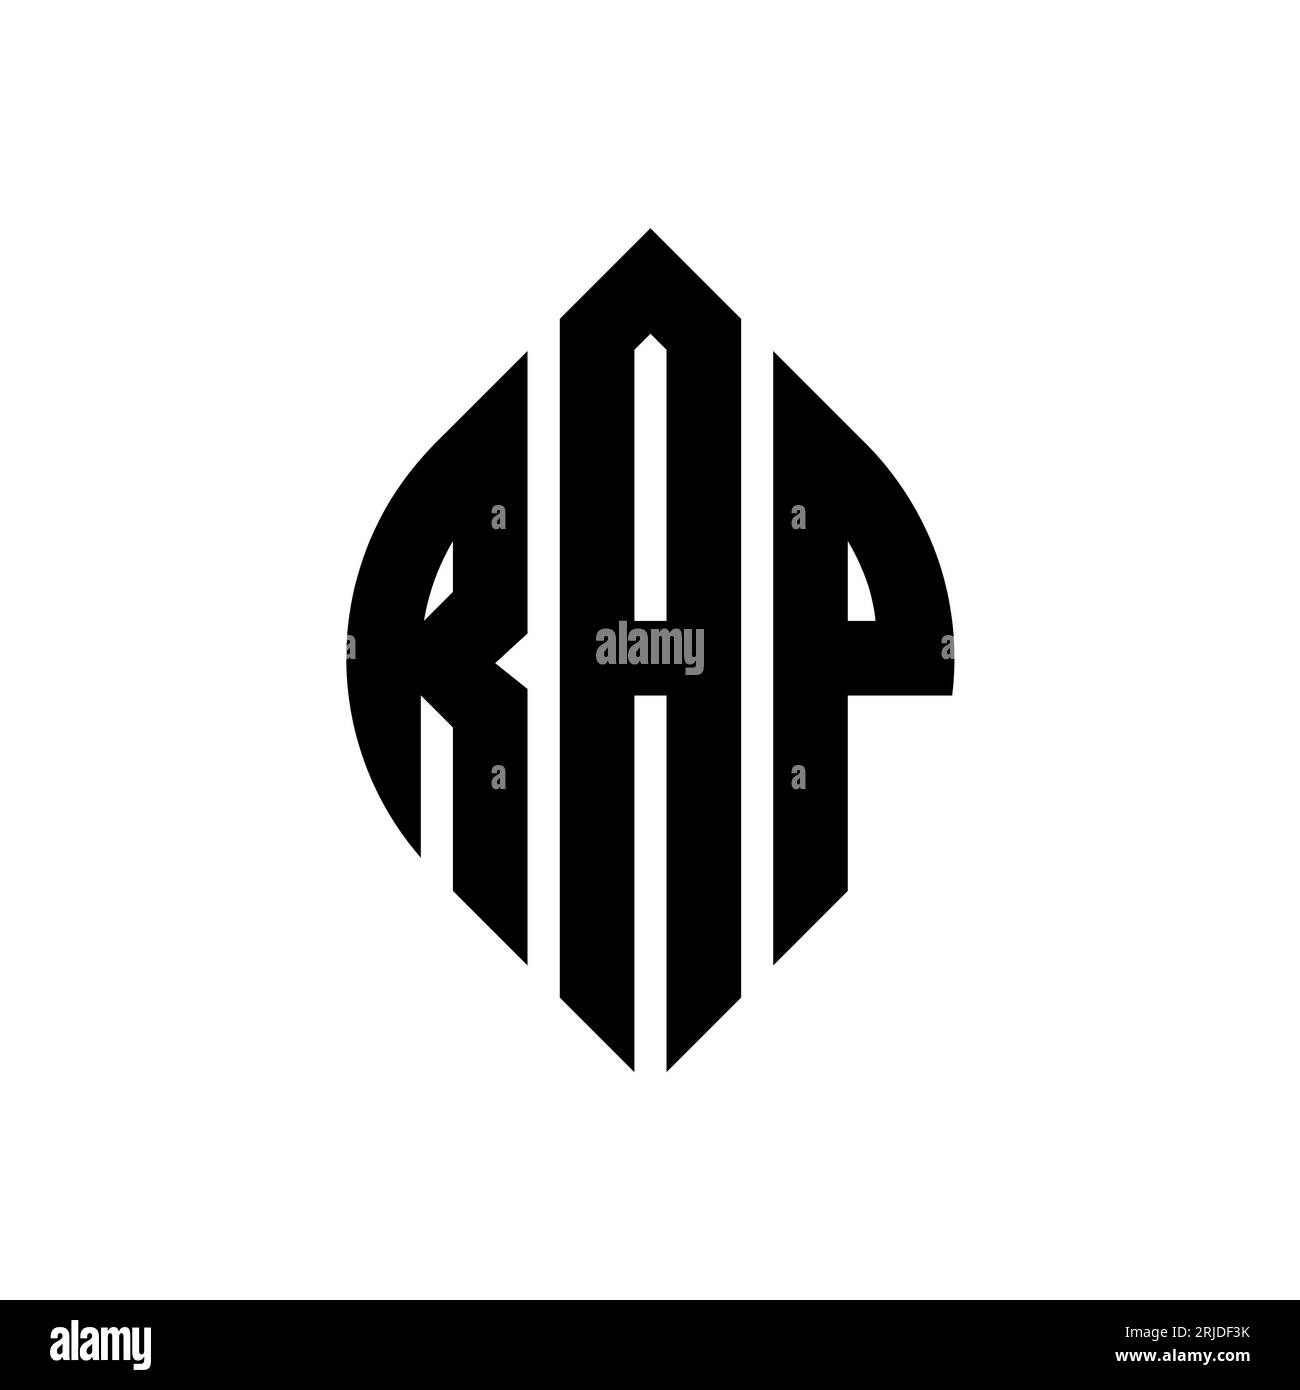 rapper logo ideas 3